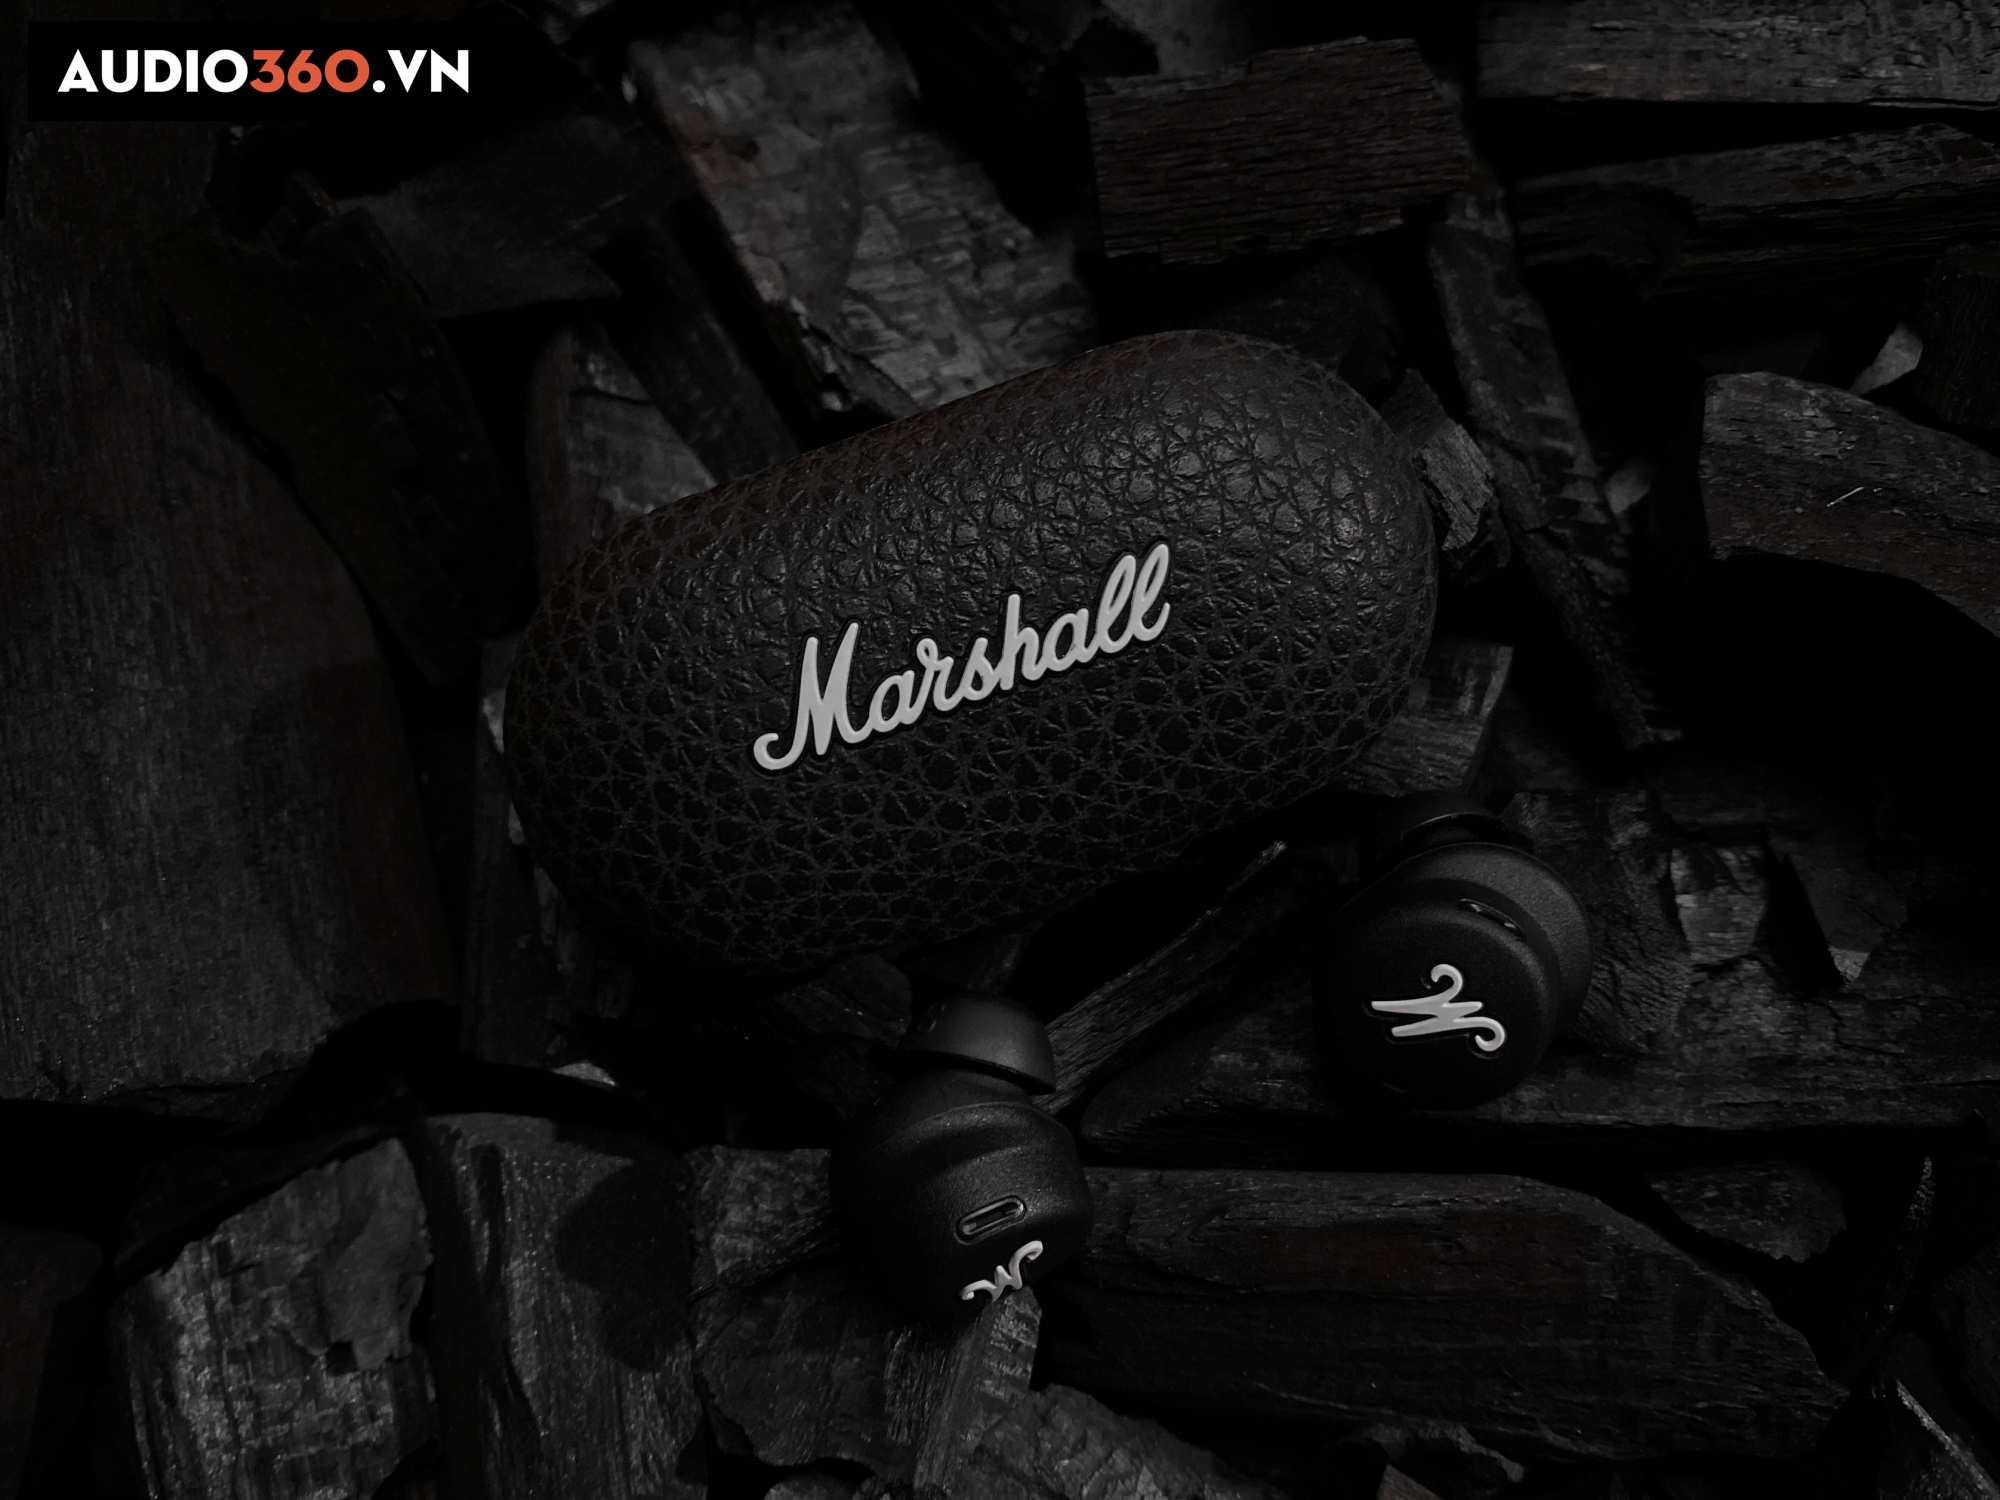 Tai nghe bluetooth Marshall Mode 2 được bao bọc bởi chất liệu da cao cấp.